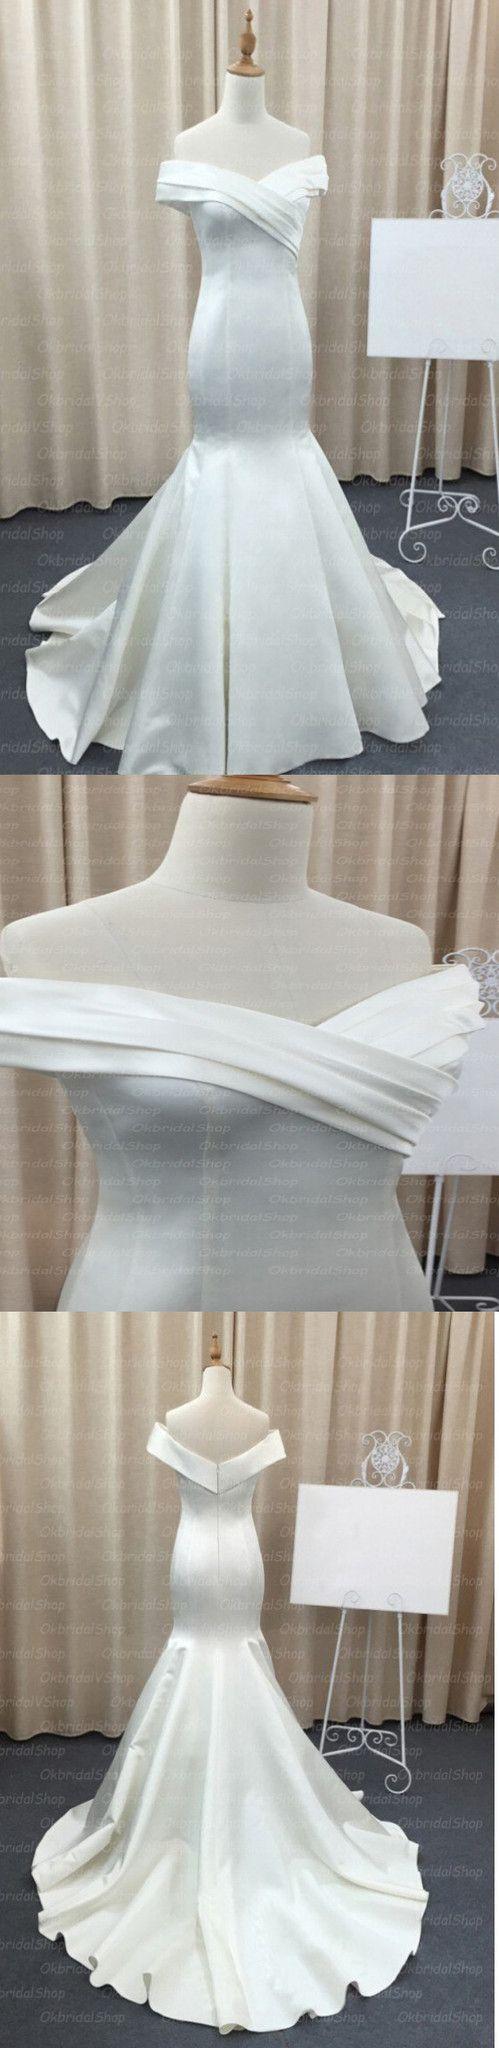 زفاف - Mermaid Stain Ivory Simple Charming Elegant Cheap Wedding Dresses Bridal Gown, WD0154 - Custom Size / Picture Color